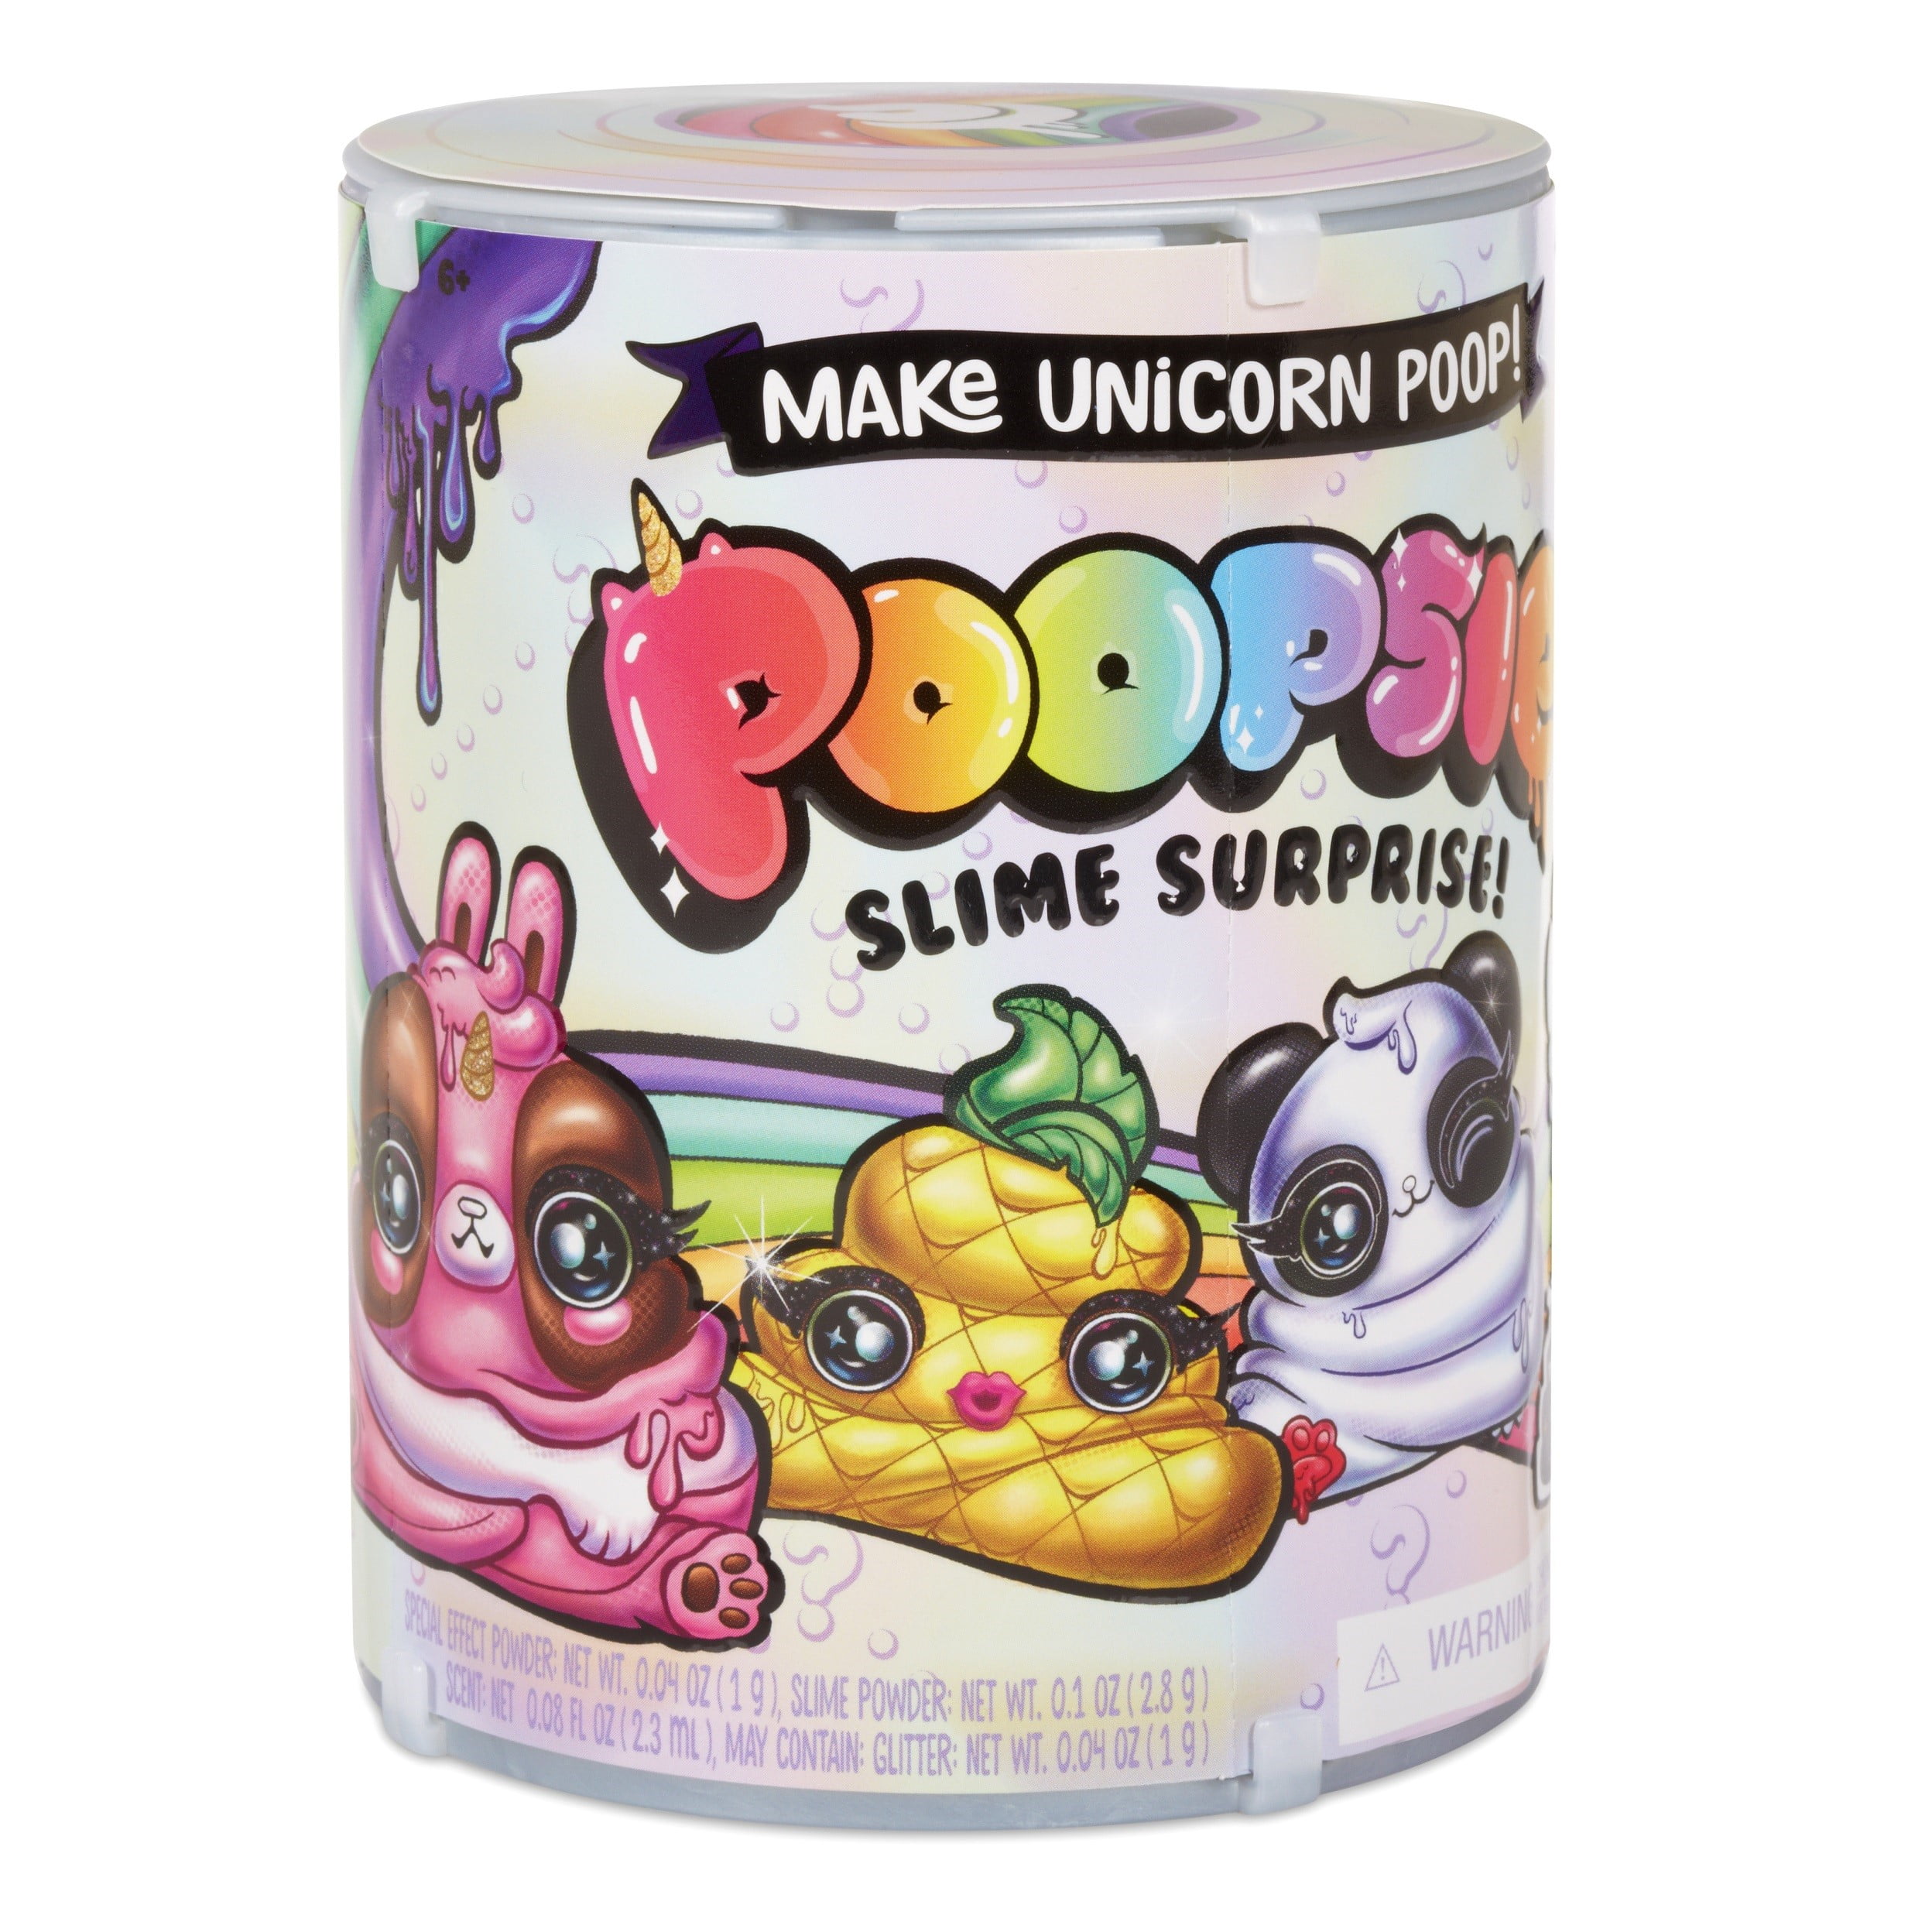 Poopsie Slime Surprise! Poop Pack Drop 3